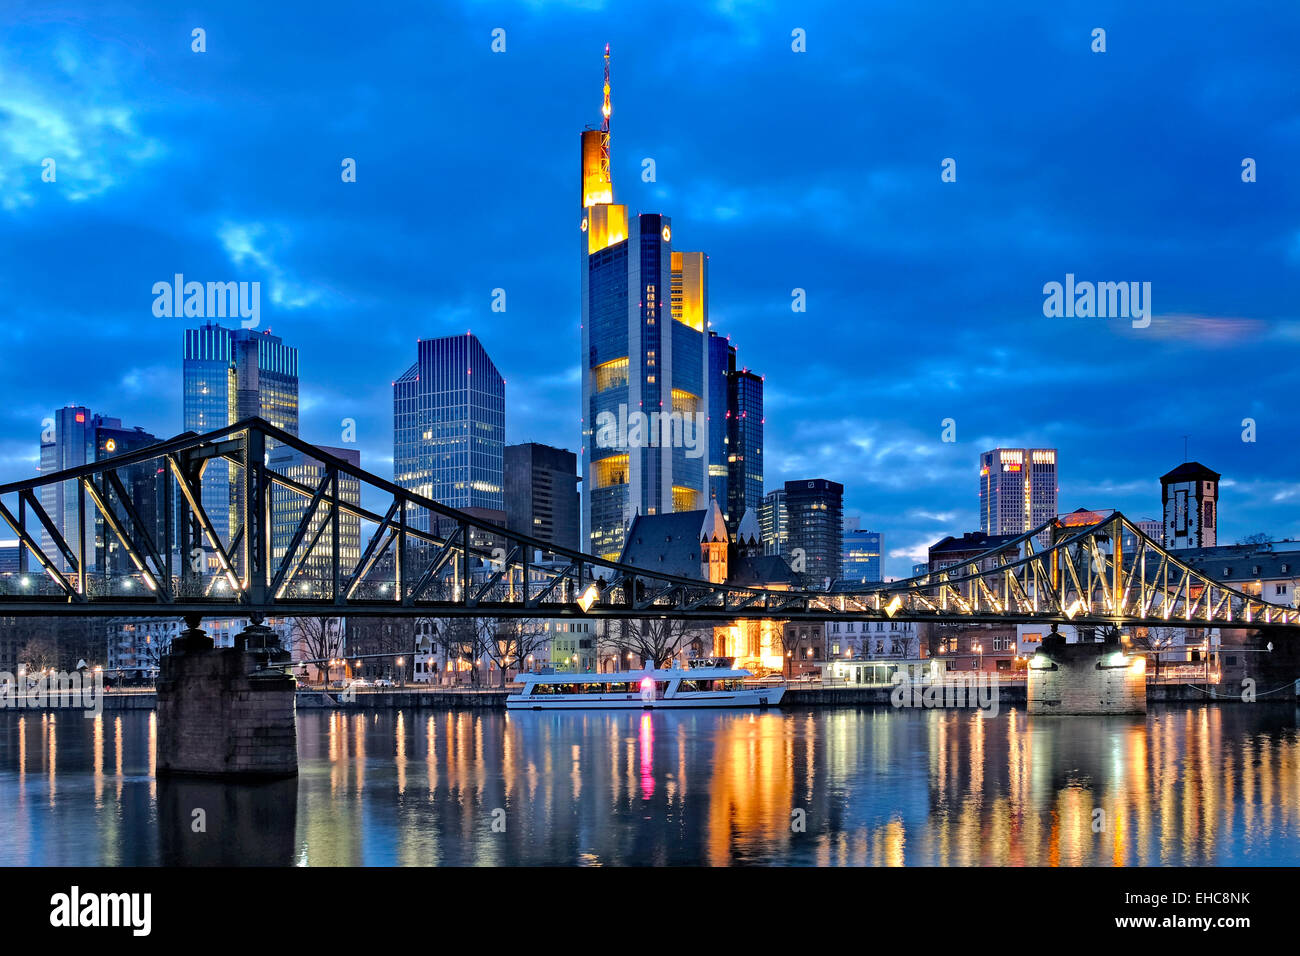 Der Fluss Main, Eiserner Steg Steg & Wolkenkratzer des Frankfurter Geschäftsviertel, Frankfurt am Main, Deutschland Stockfoto